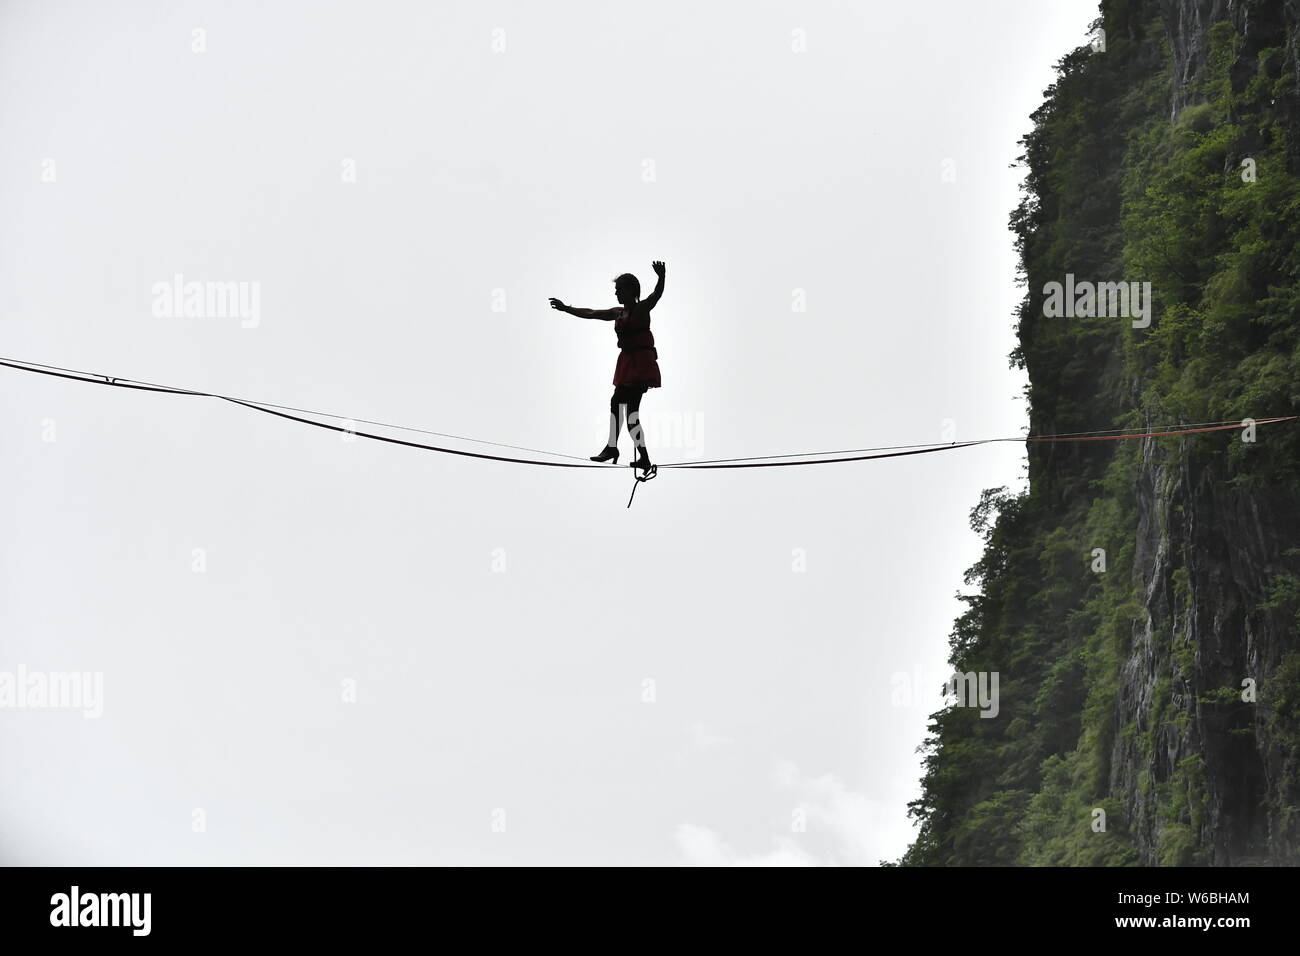 Mimi Guesdon de Francia participa en un concurso de slackline en tacones altos en un debut mundial desafío a través de los acantilados de la montaña Tianmen (o Tianmens Foto de stock